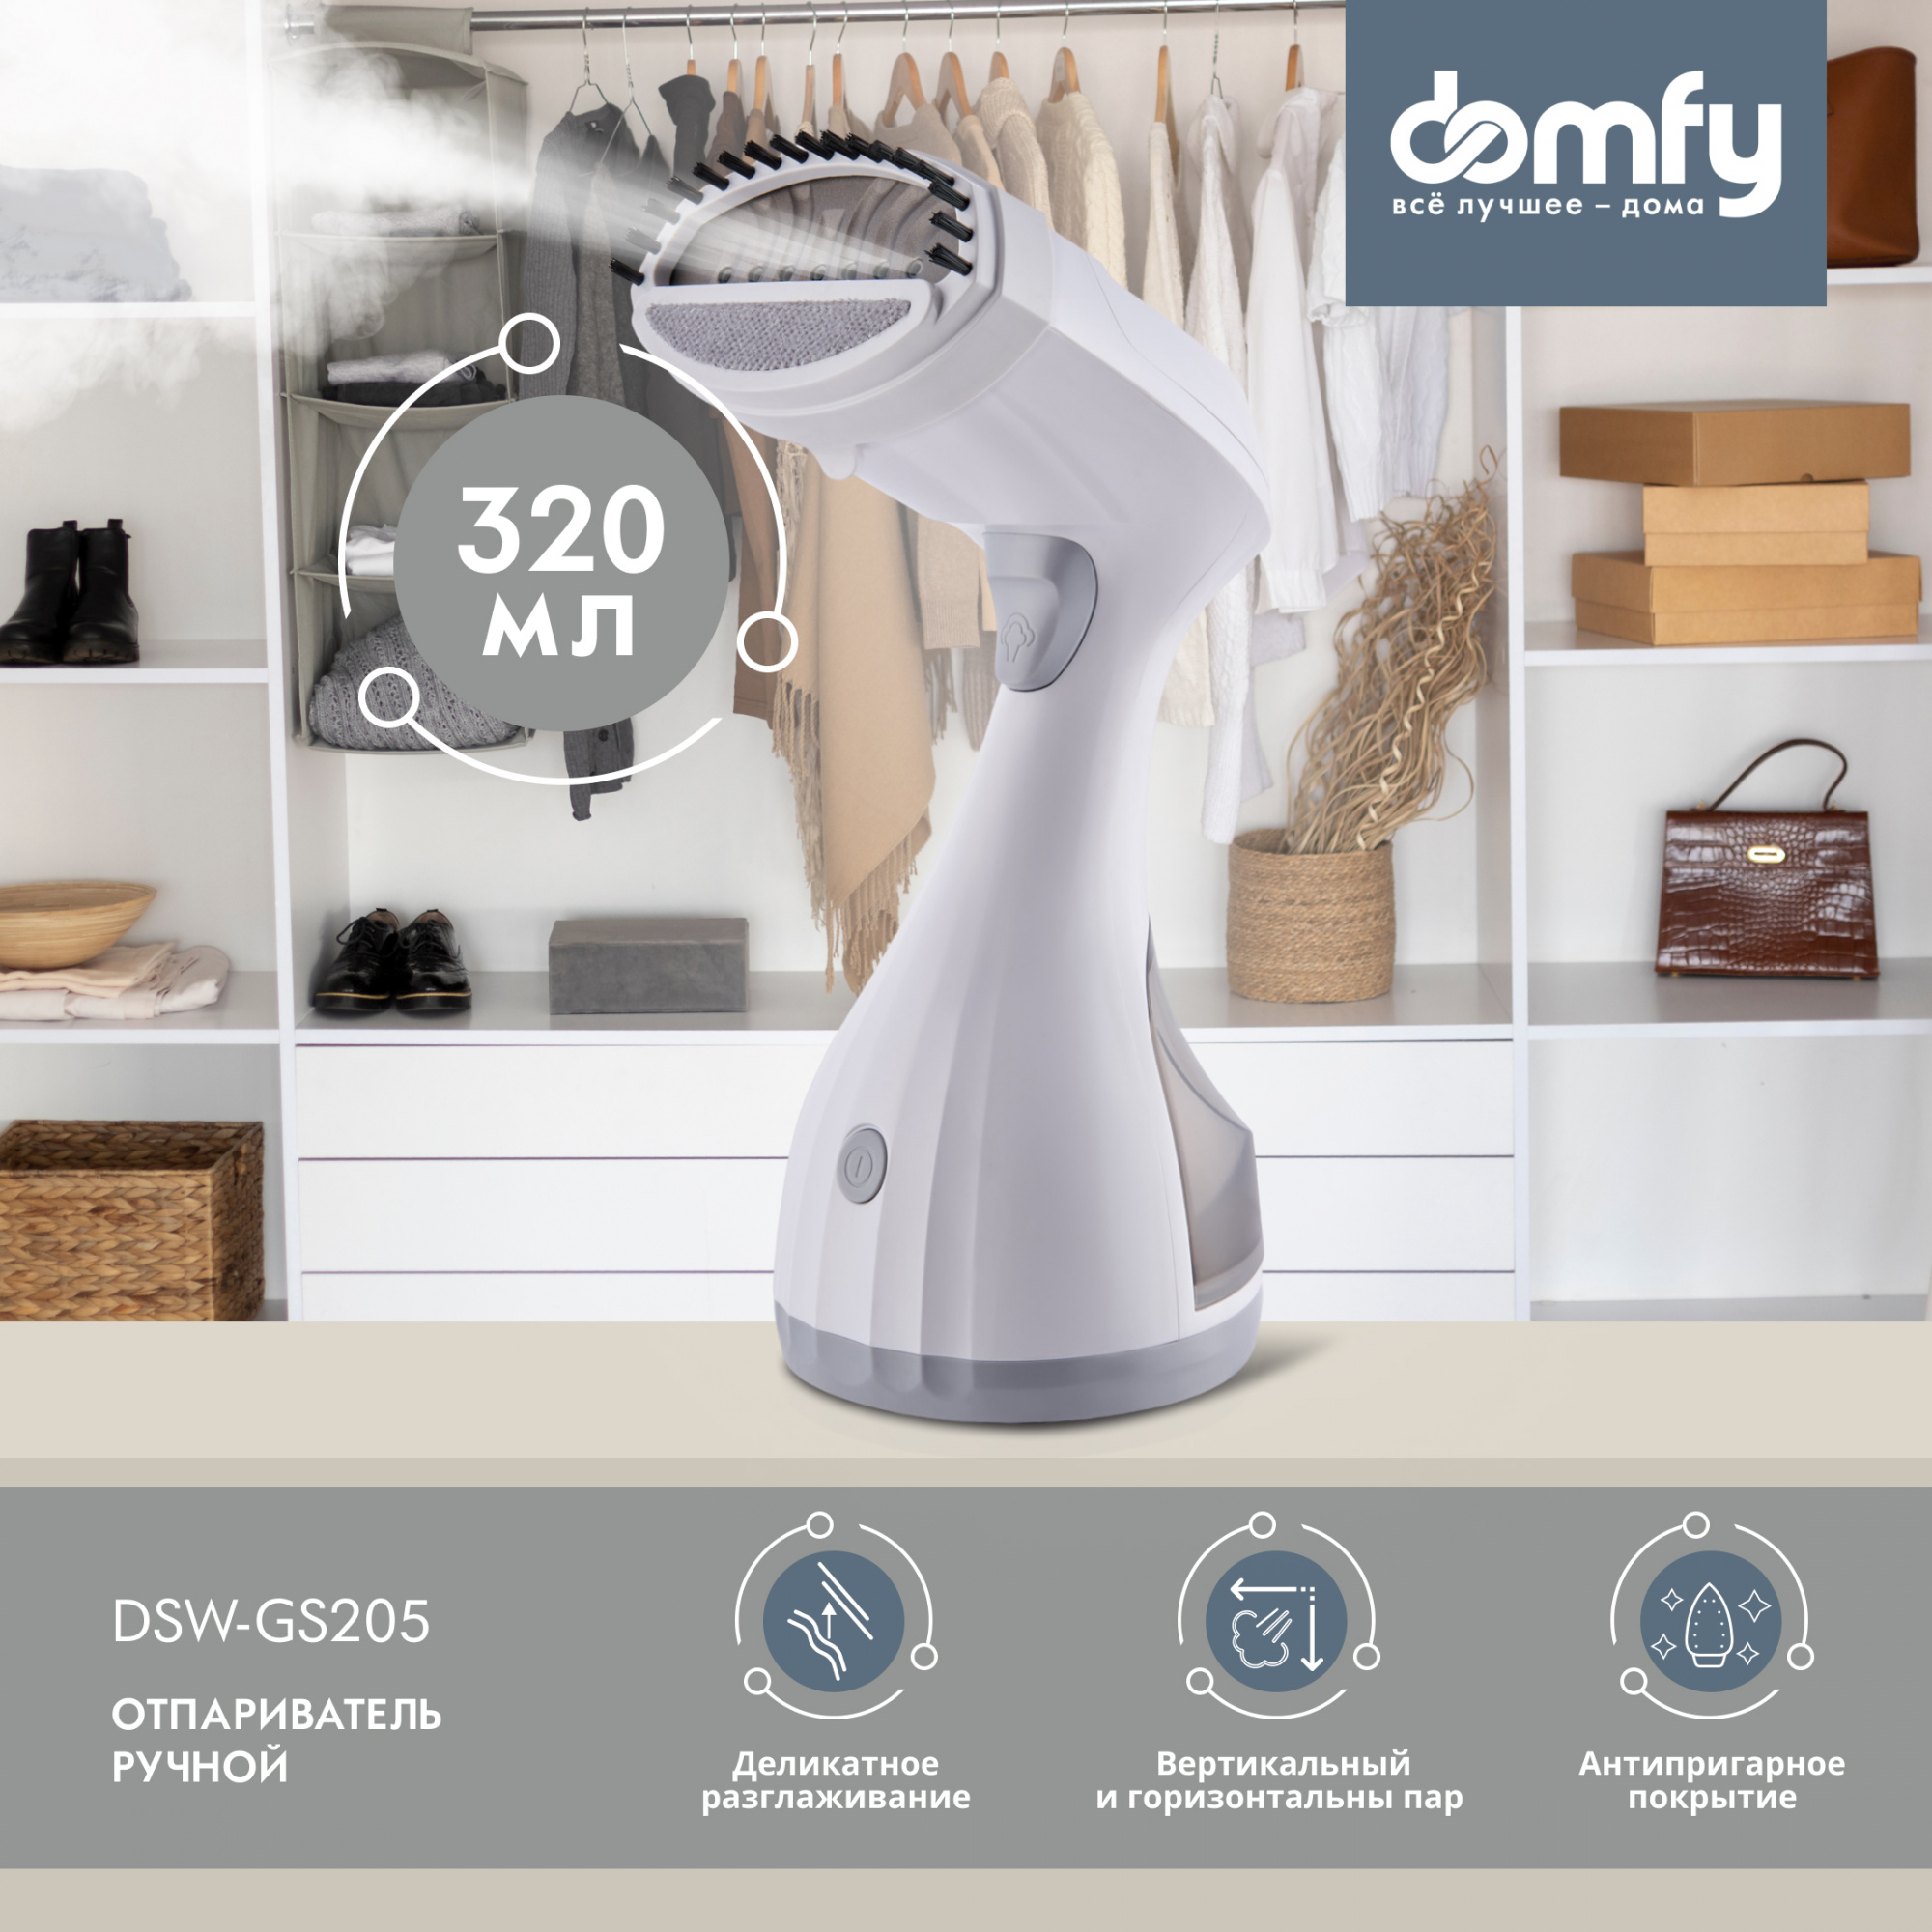 Отпариватель ручной Domfy DSW-GS205 1650Вт белый/серый